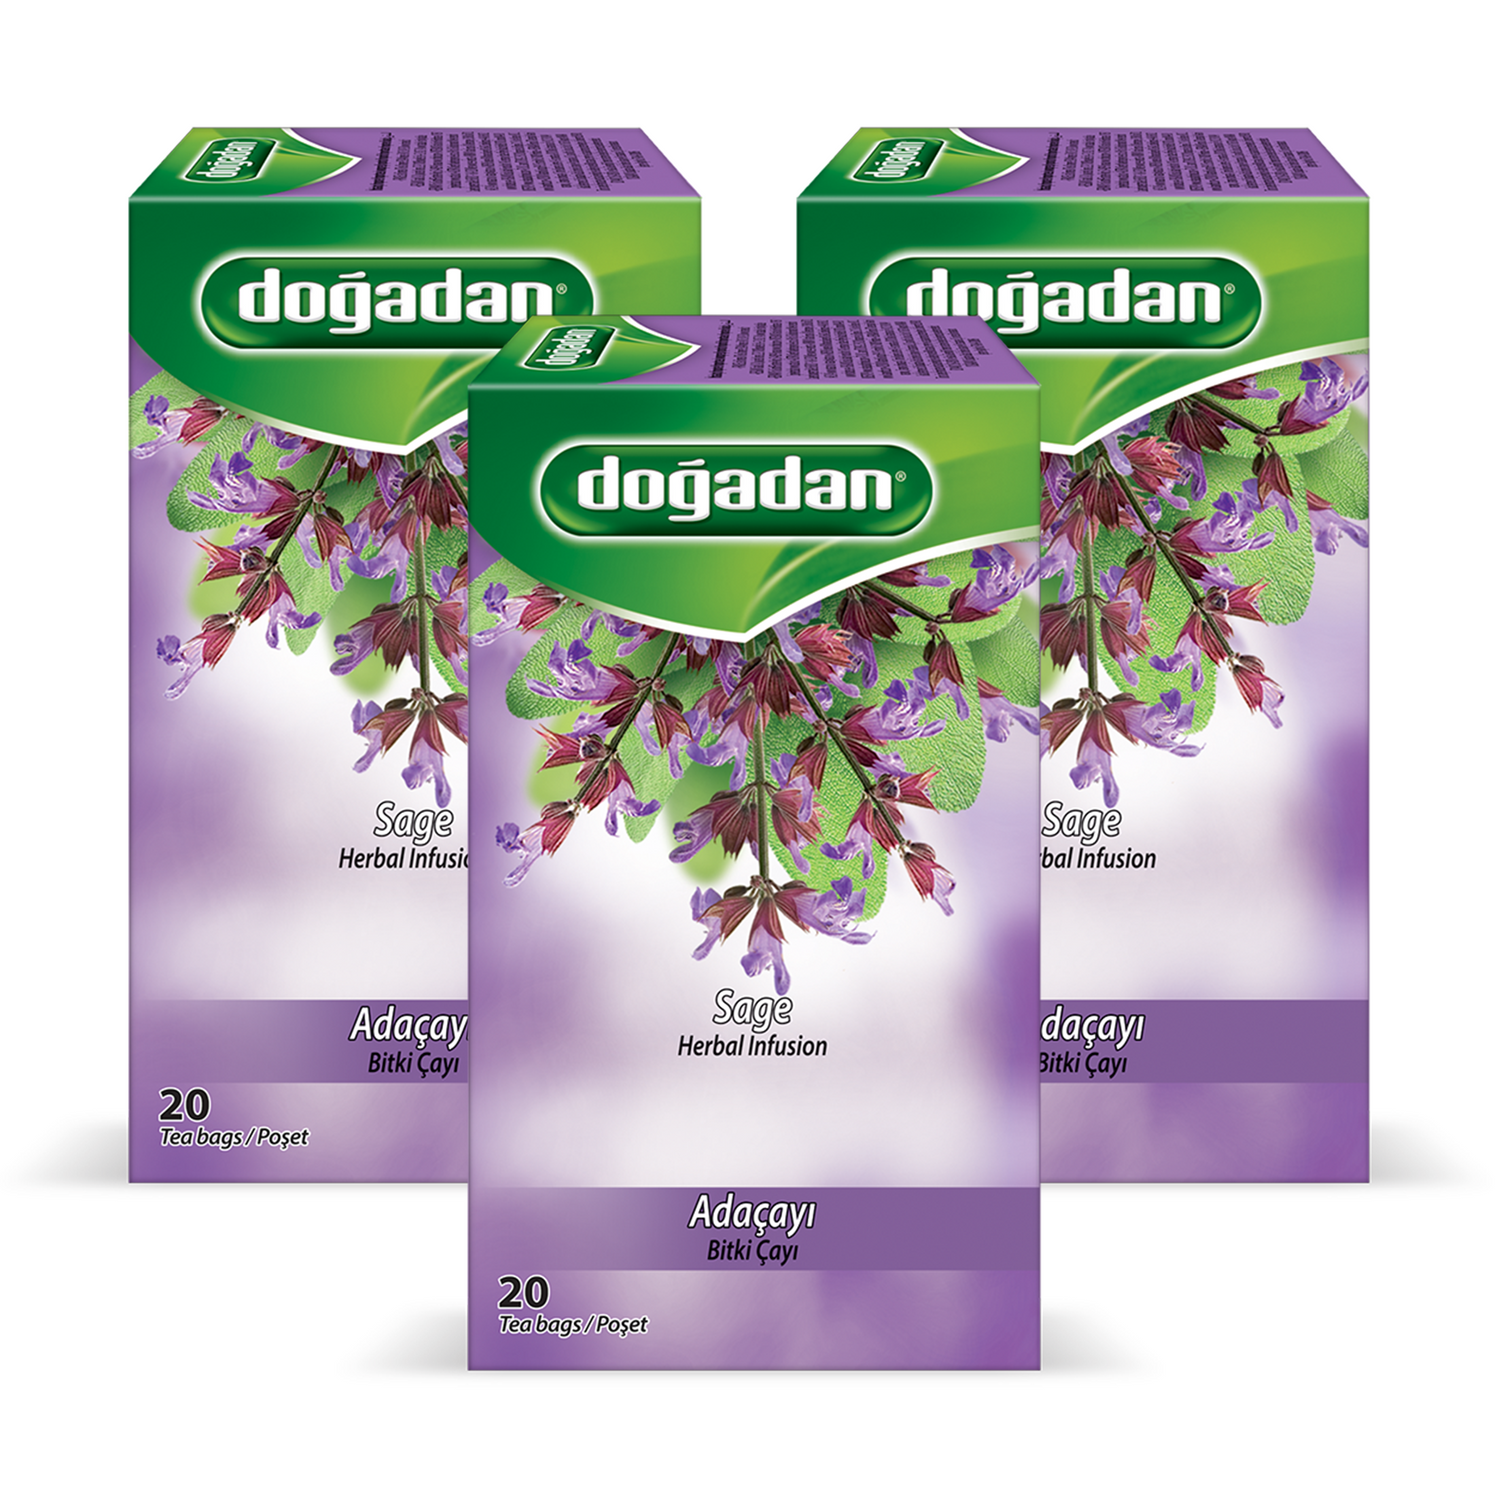 ドアダン セージハーブティー 1.3g×20P | Dogadan Adacayi Bitki Cayi | Sage Herbal Infusion